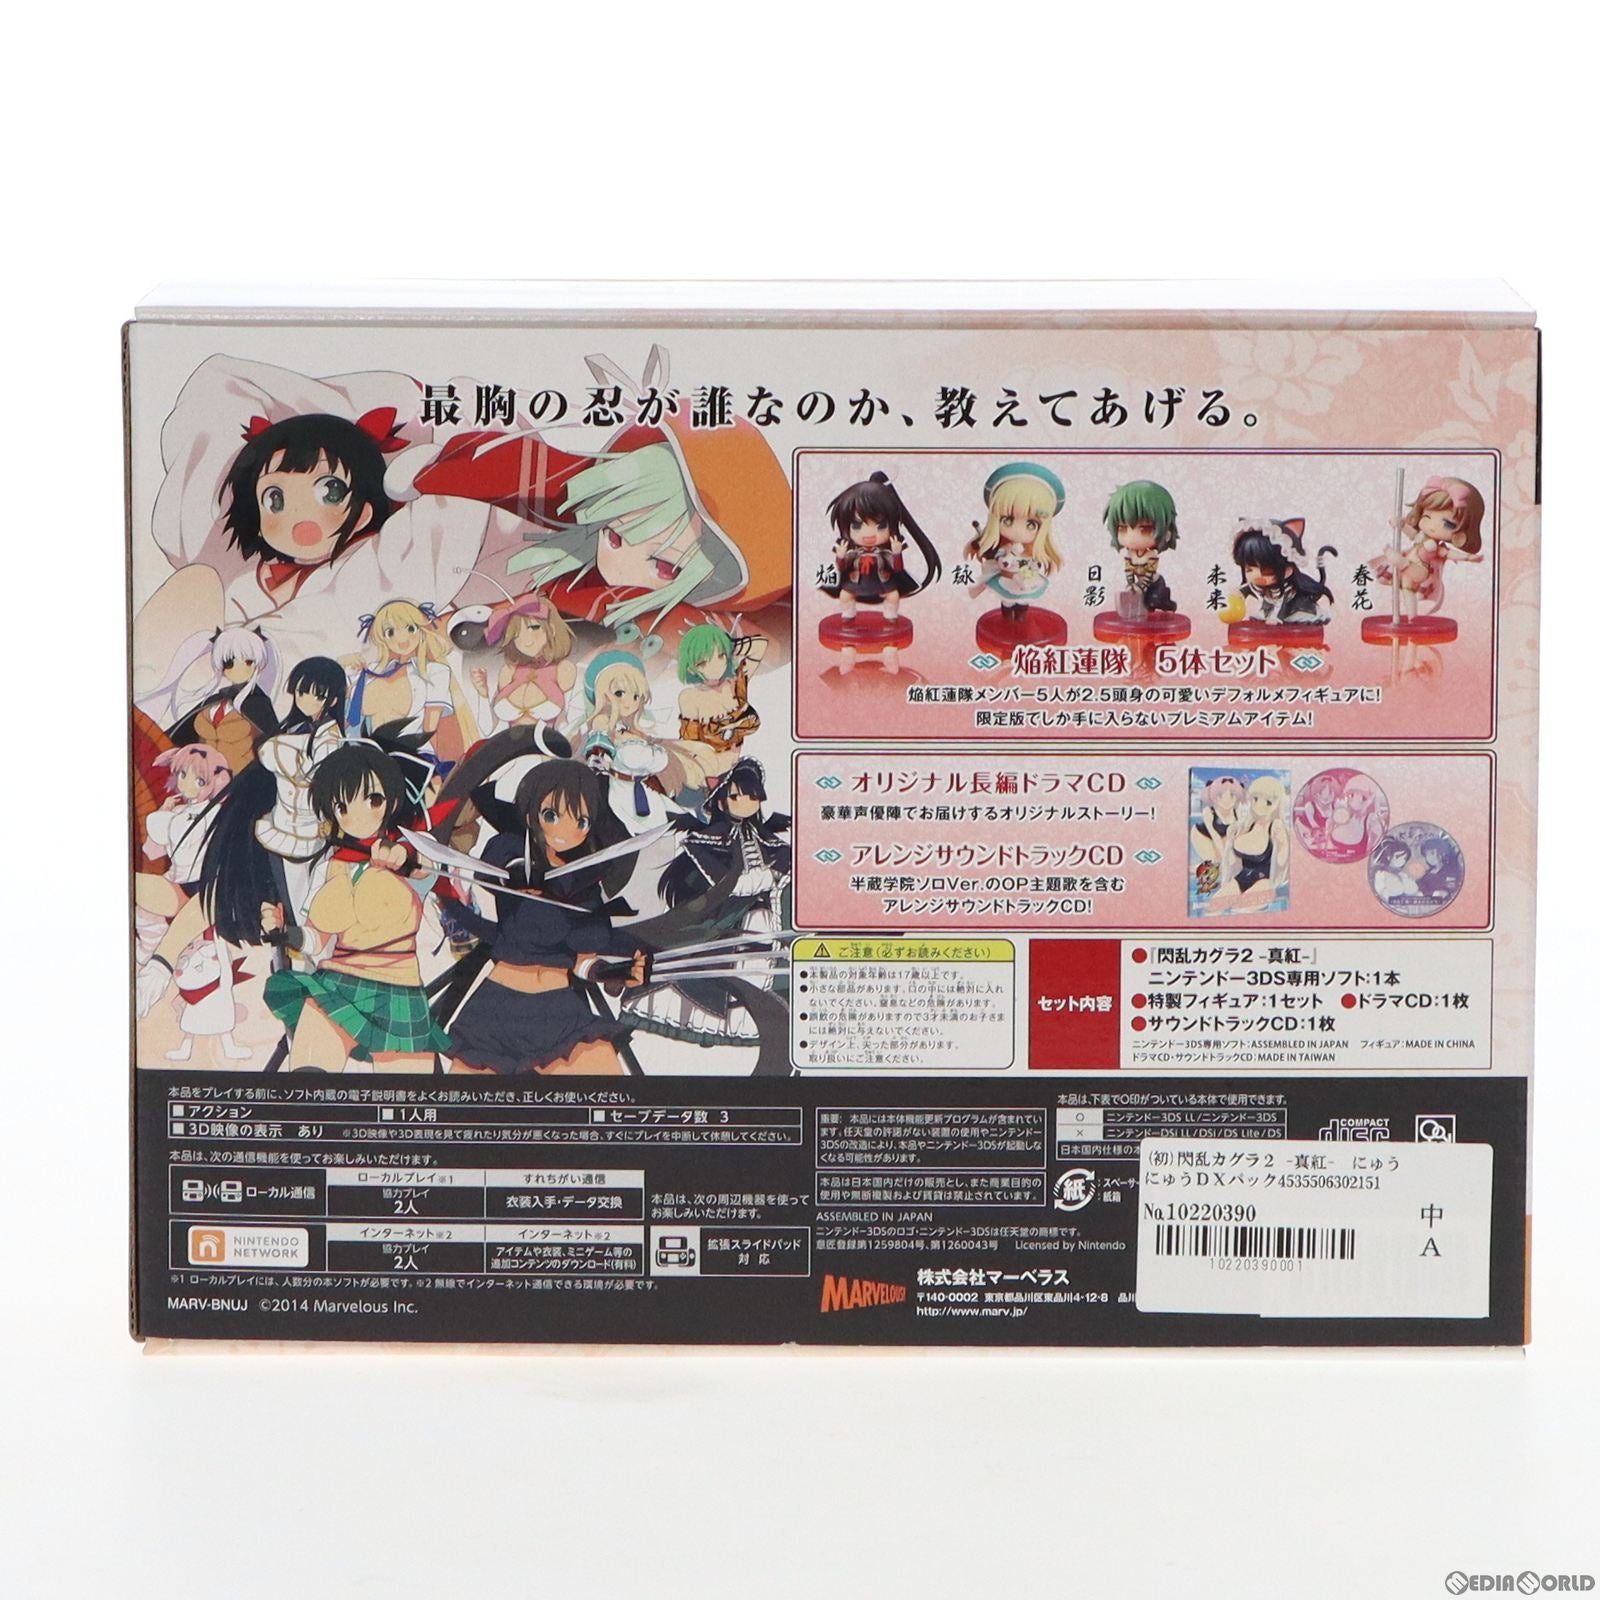 【新品即納】[3DS]閃乱カグラ2 -真紅- にゅうにゅうDXパック 限定版(20140807)